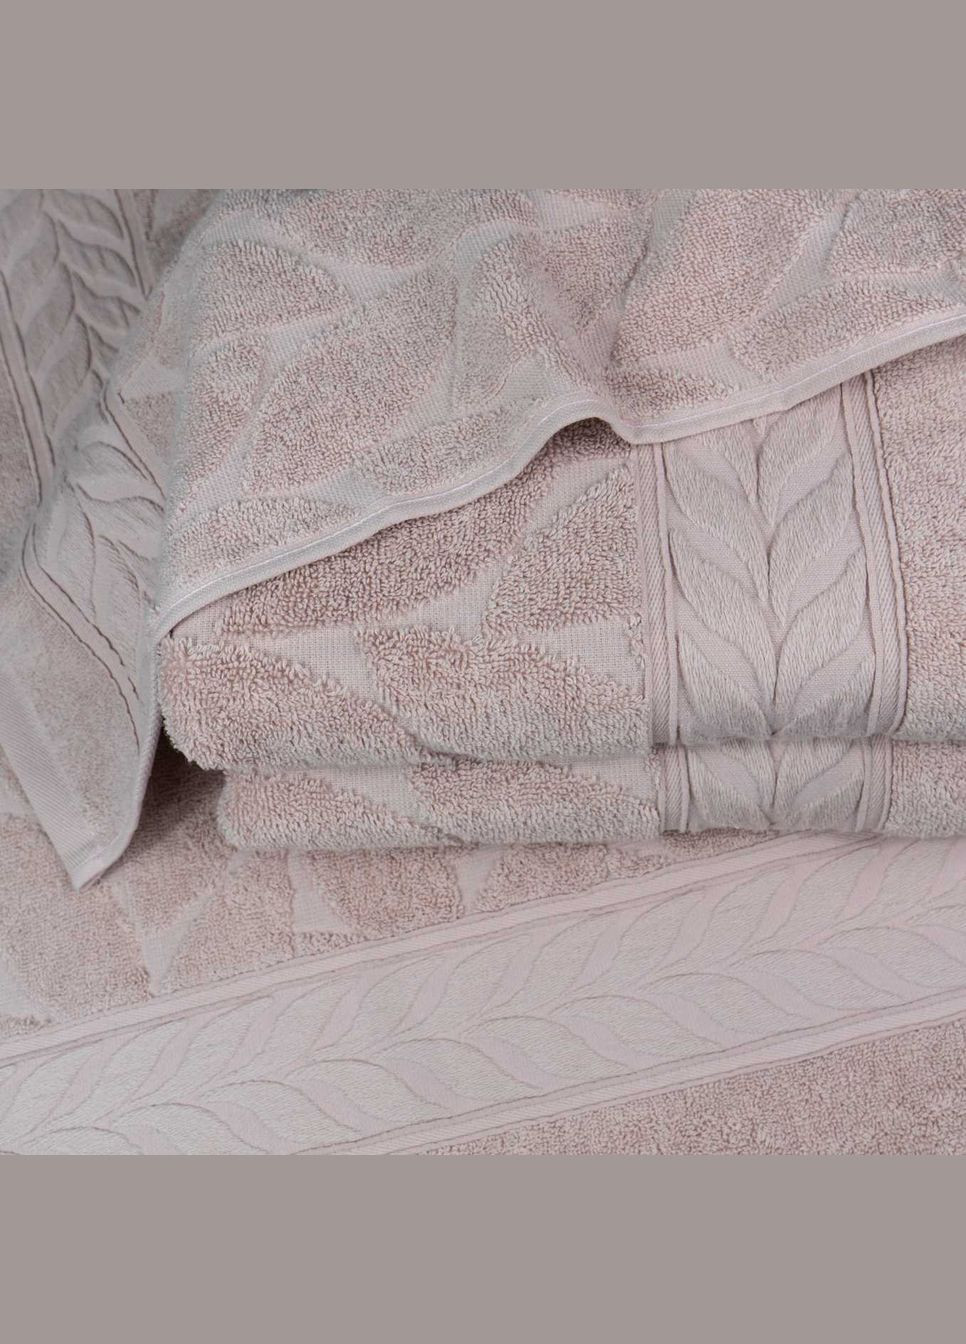 GM Textile полотенце махровое 50x90см премиум качества листья 550г/м2 (пудровый) комбинированный производство - Узбекистан